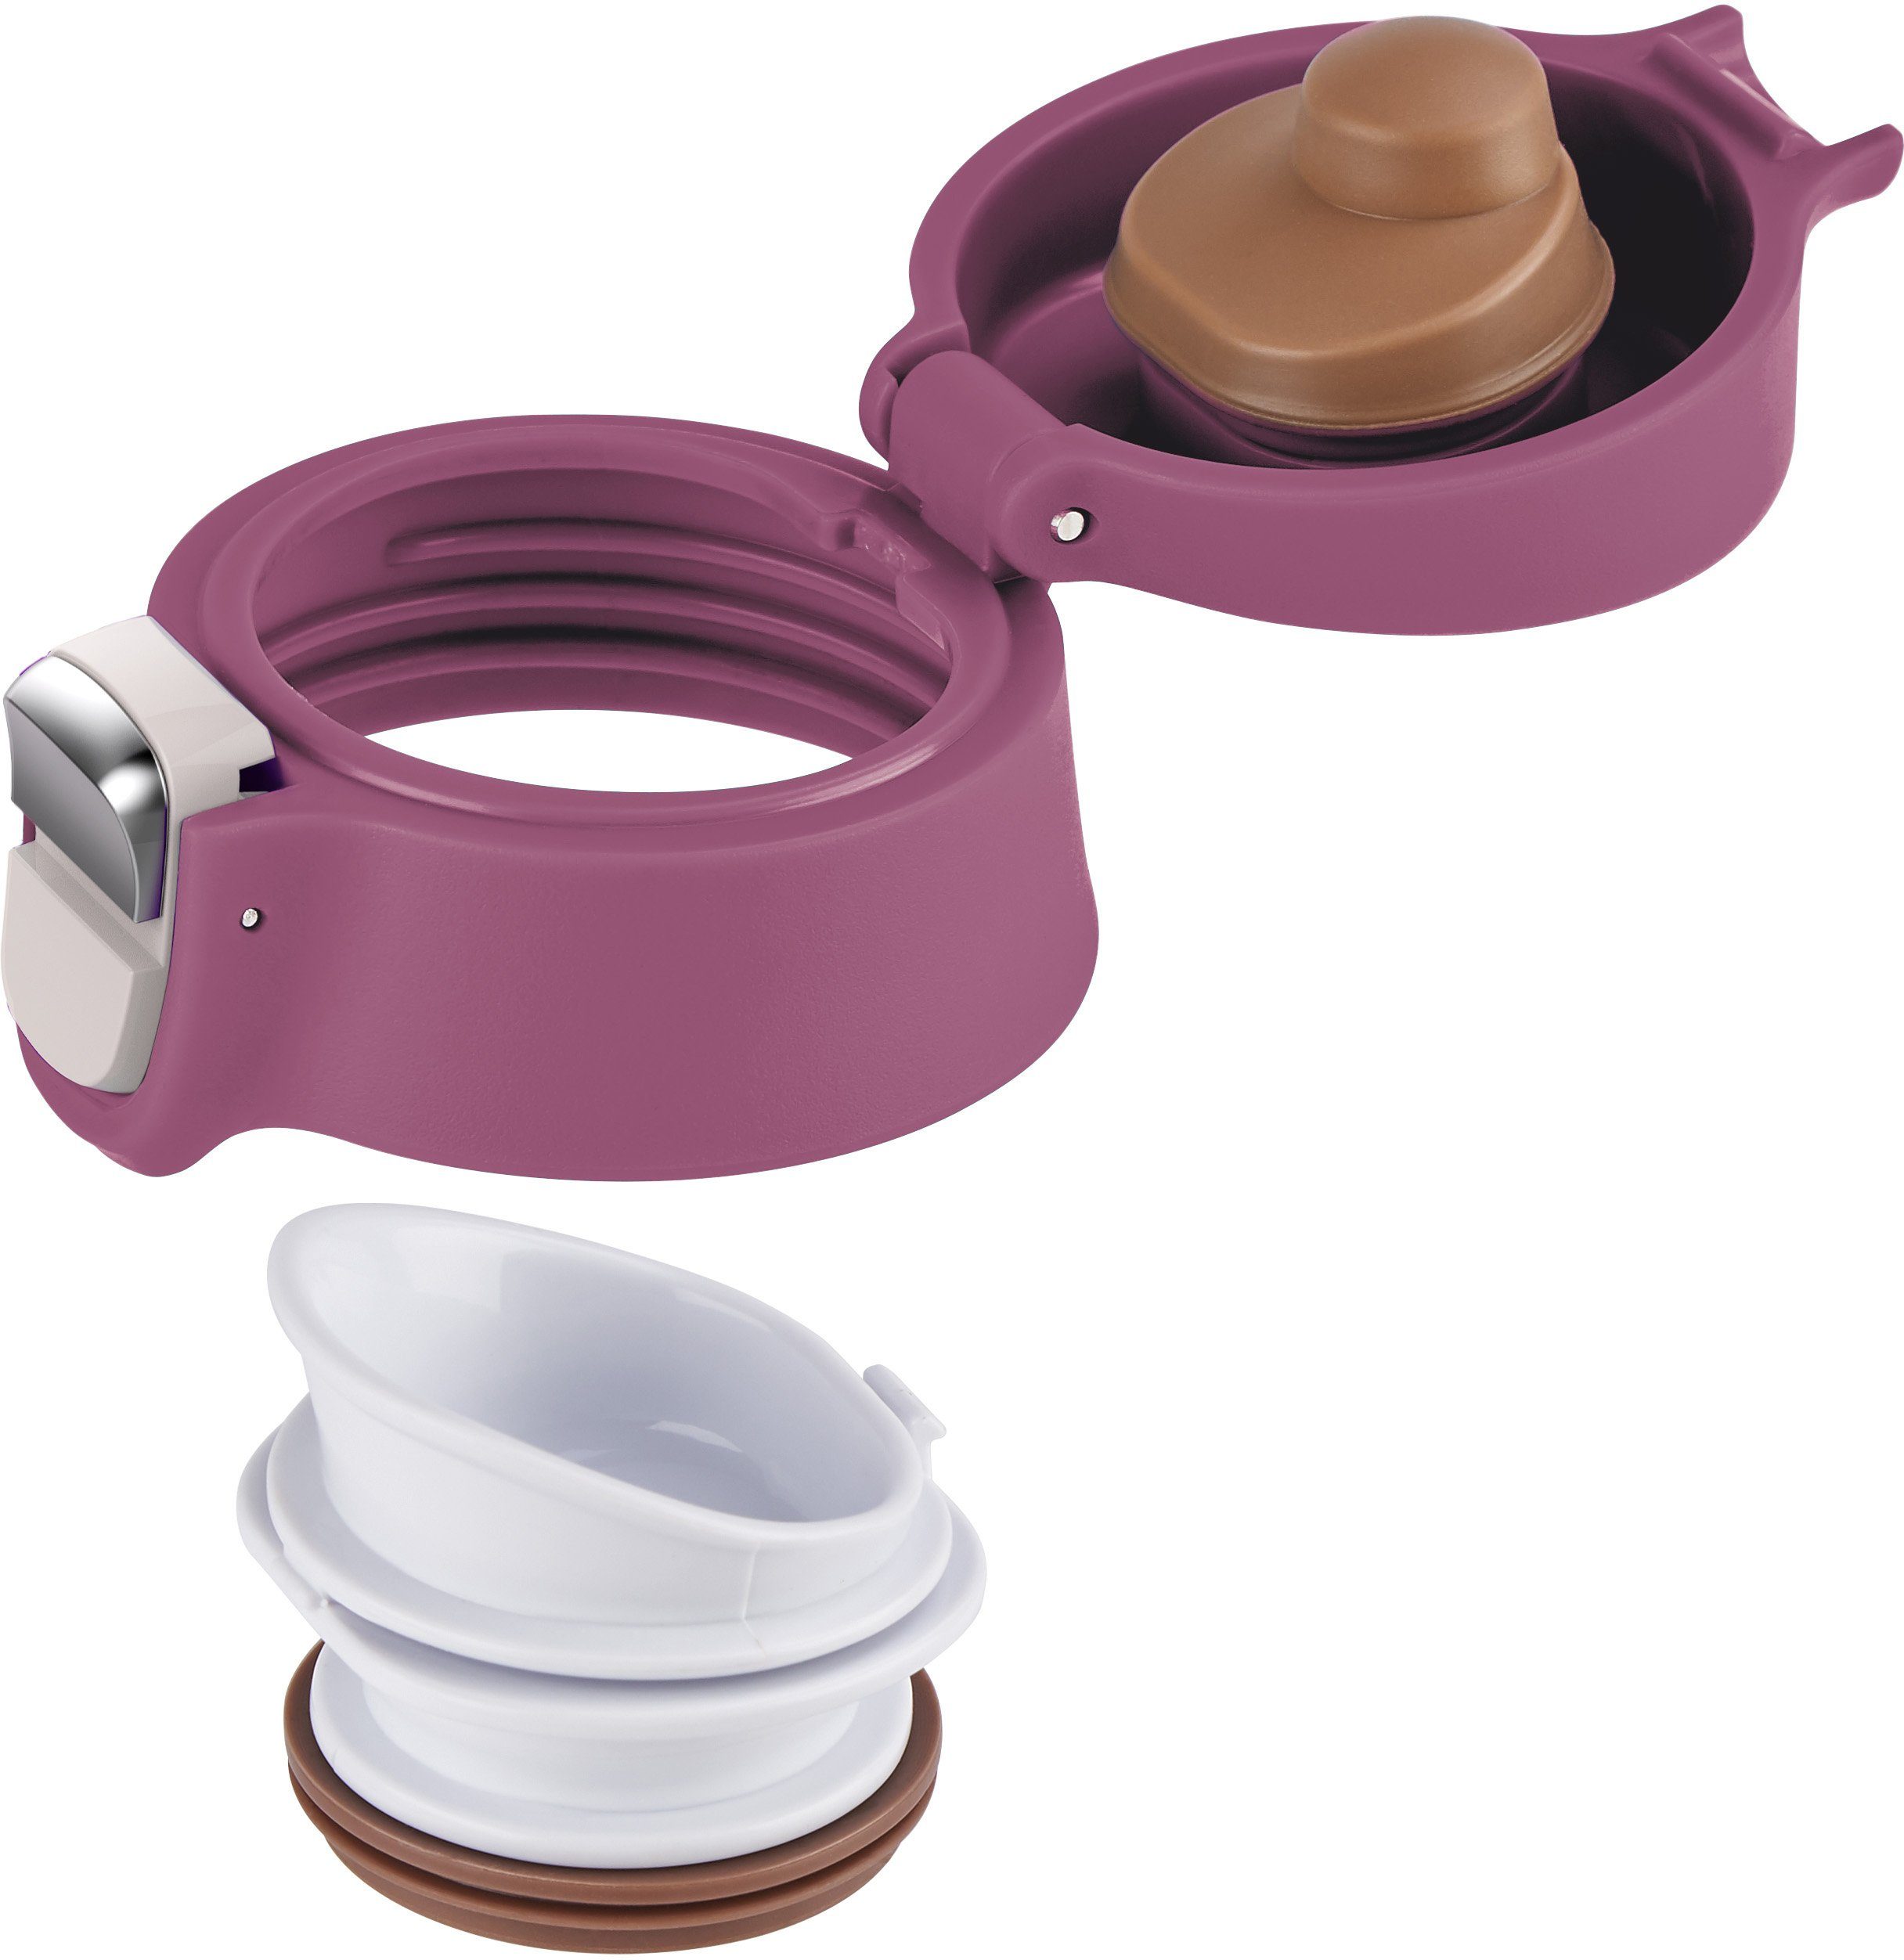 Emsa Thermobecher Travel Mug Light, dicht, 8h 100% Edelstahl, warm/16h rosa Kunststoff, 0,4L, Edelstahl, kalt